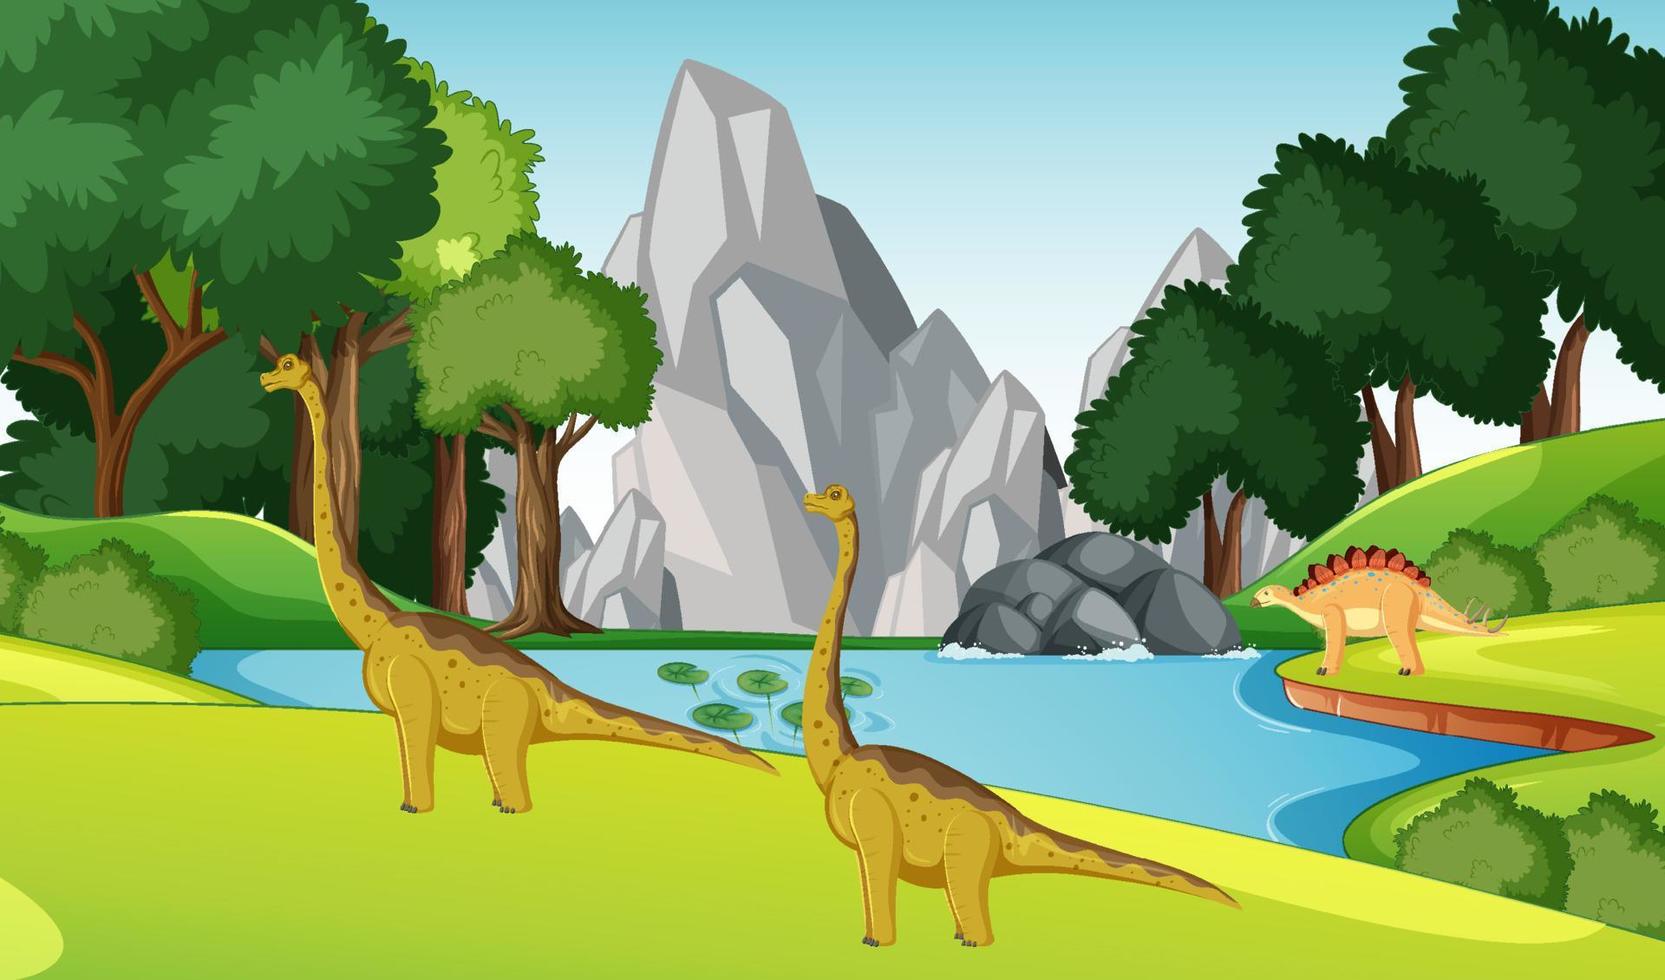 dinossauro na cena da floresta pré-histórica vetor